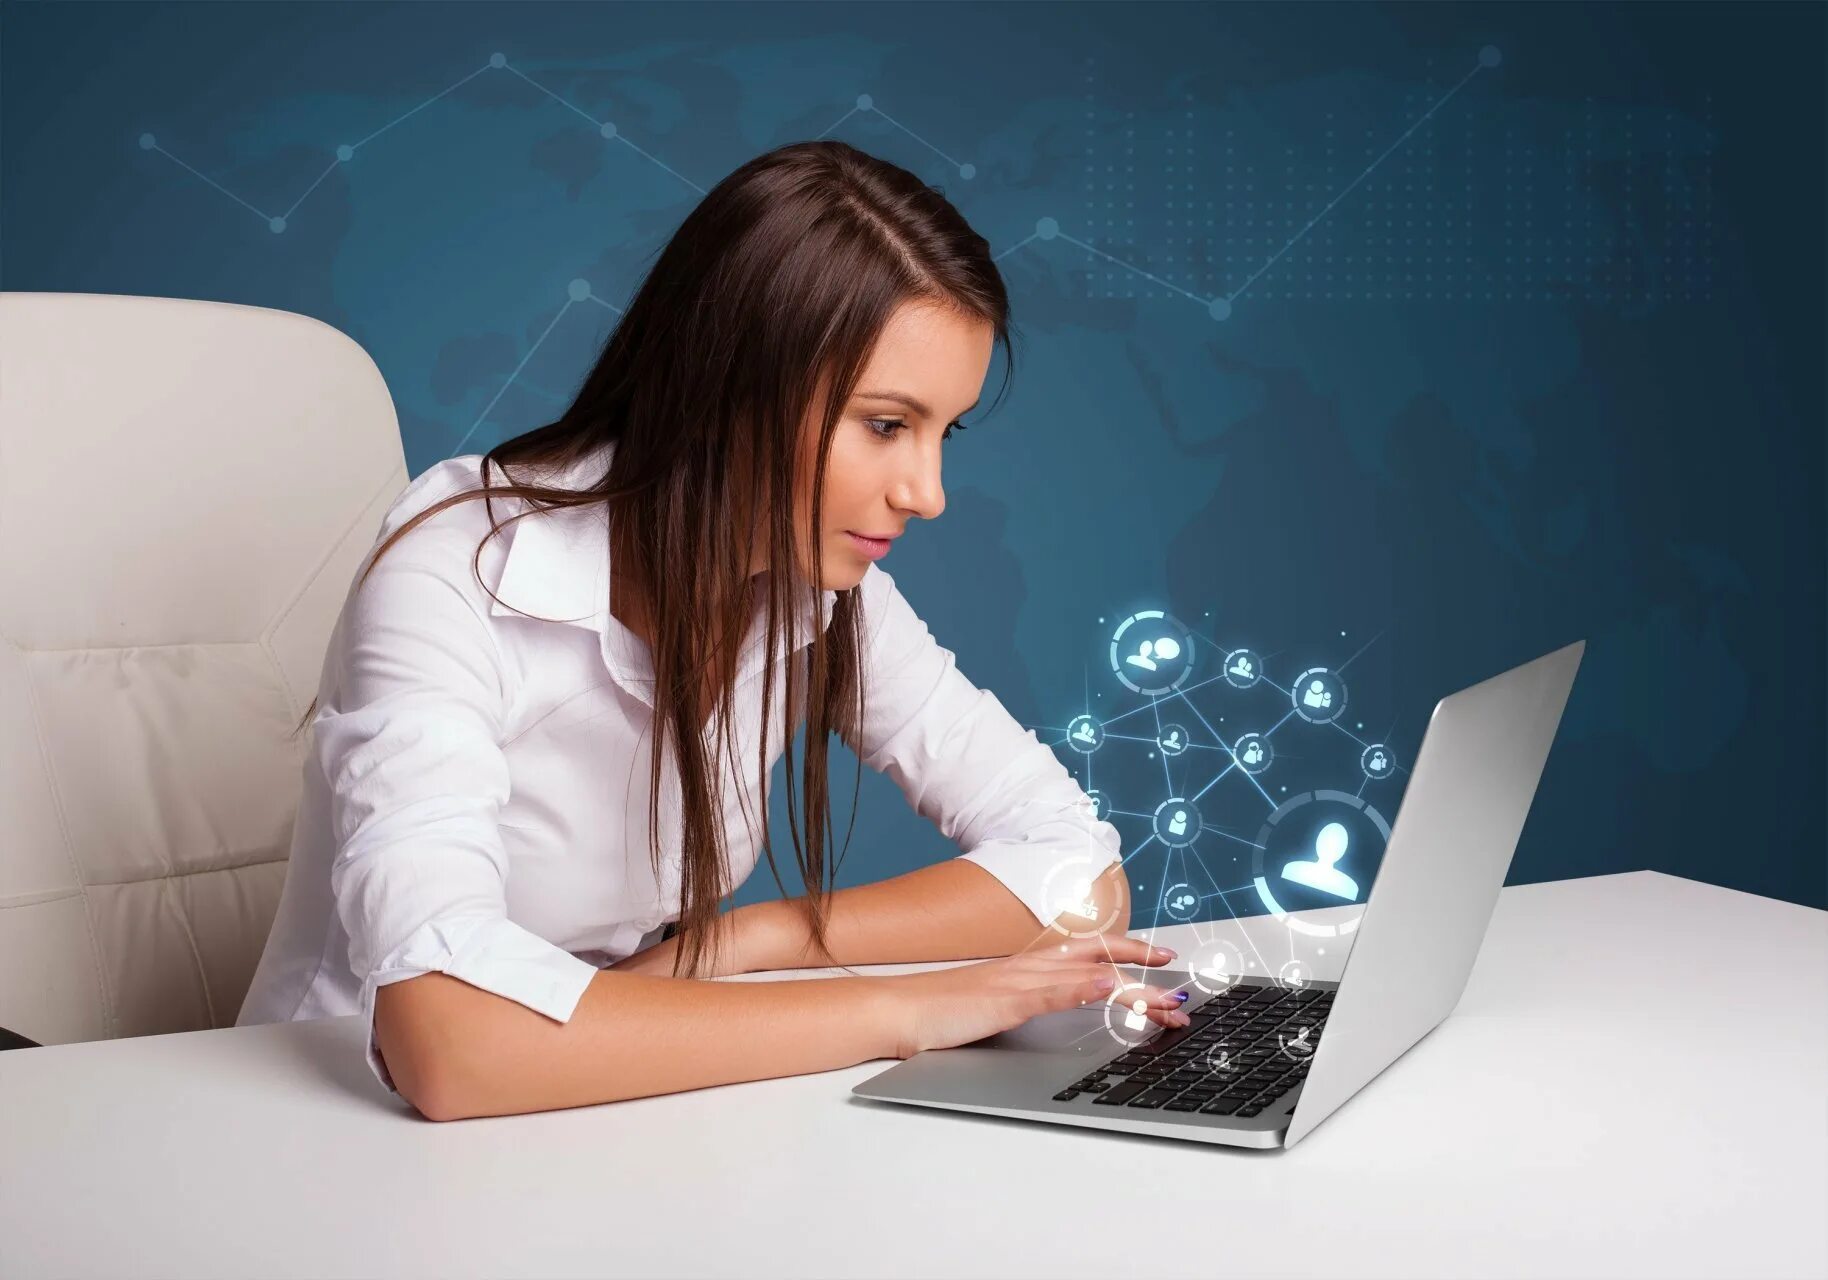 Интернет прямо на сайте интернет. Человек за компьютером. Девушка за ноутбуком. Компьютер и человек. Женщина в интернете.